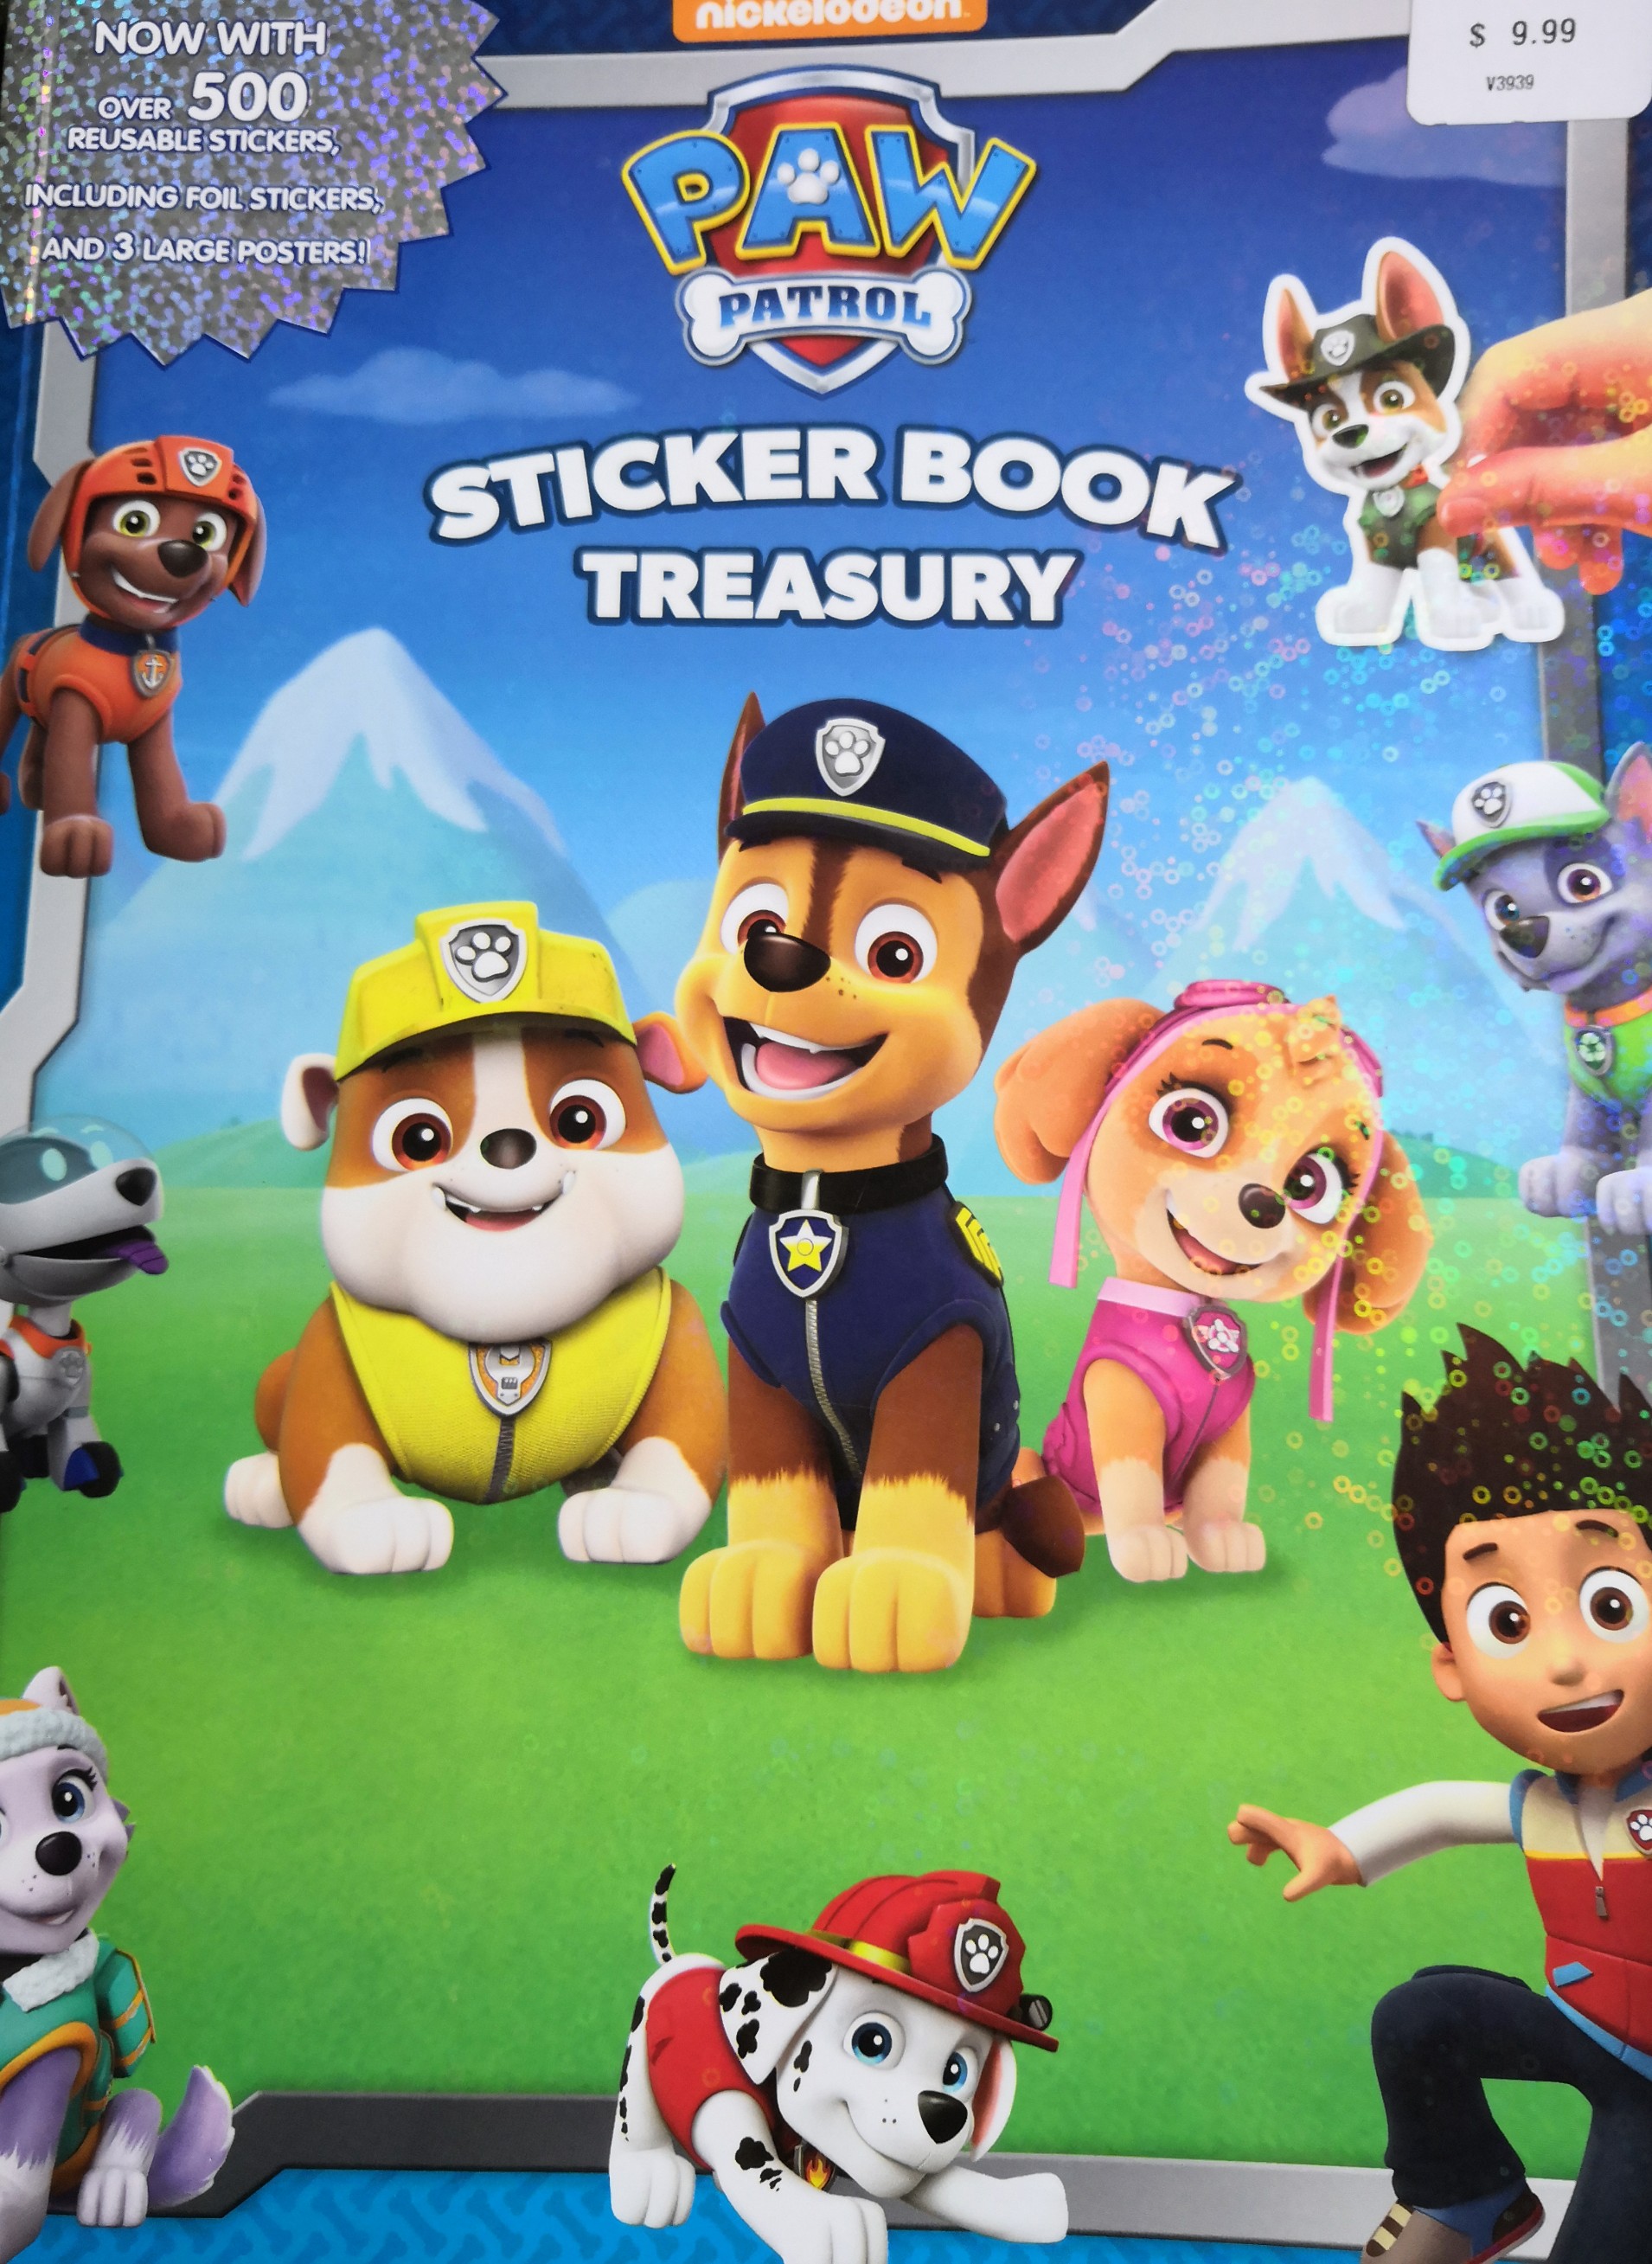 paw patrol sticker book treasury